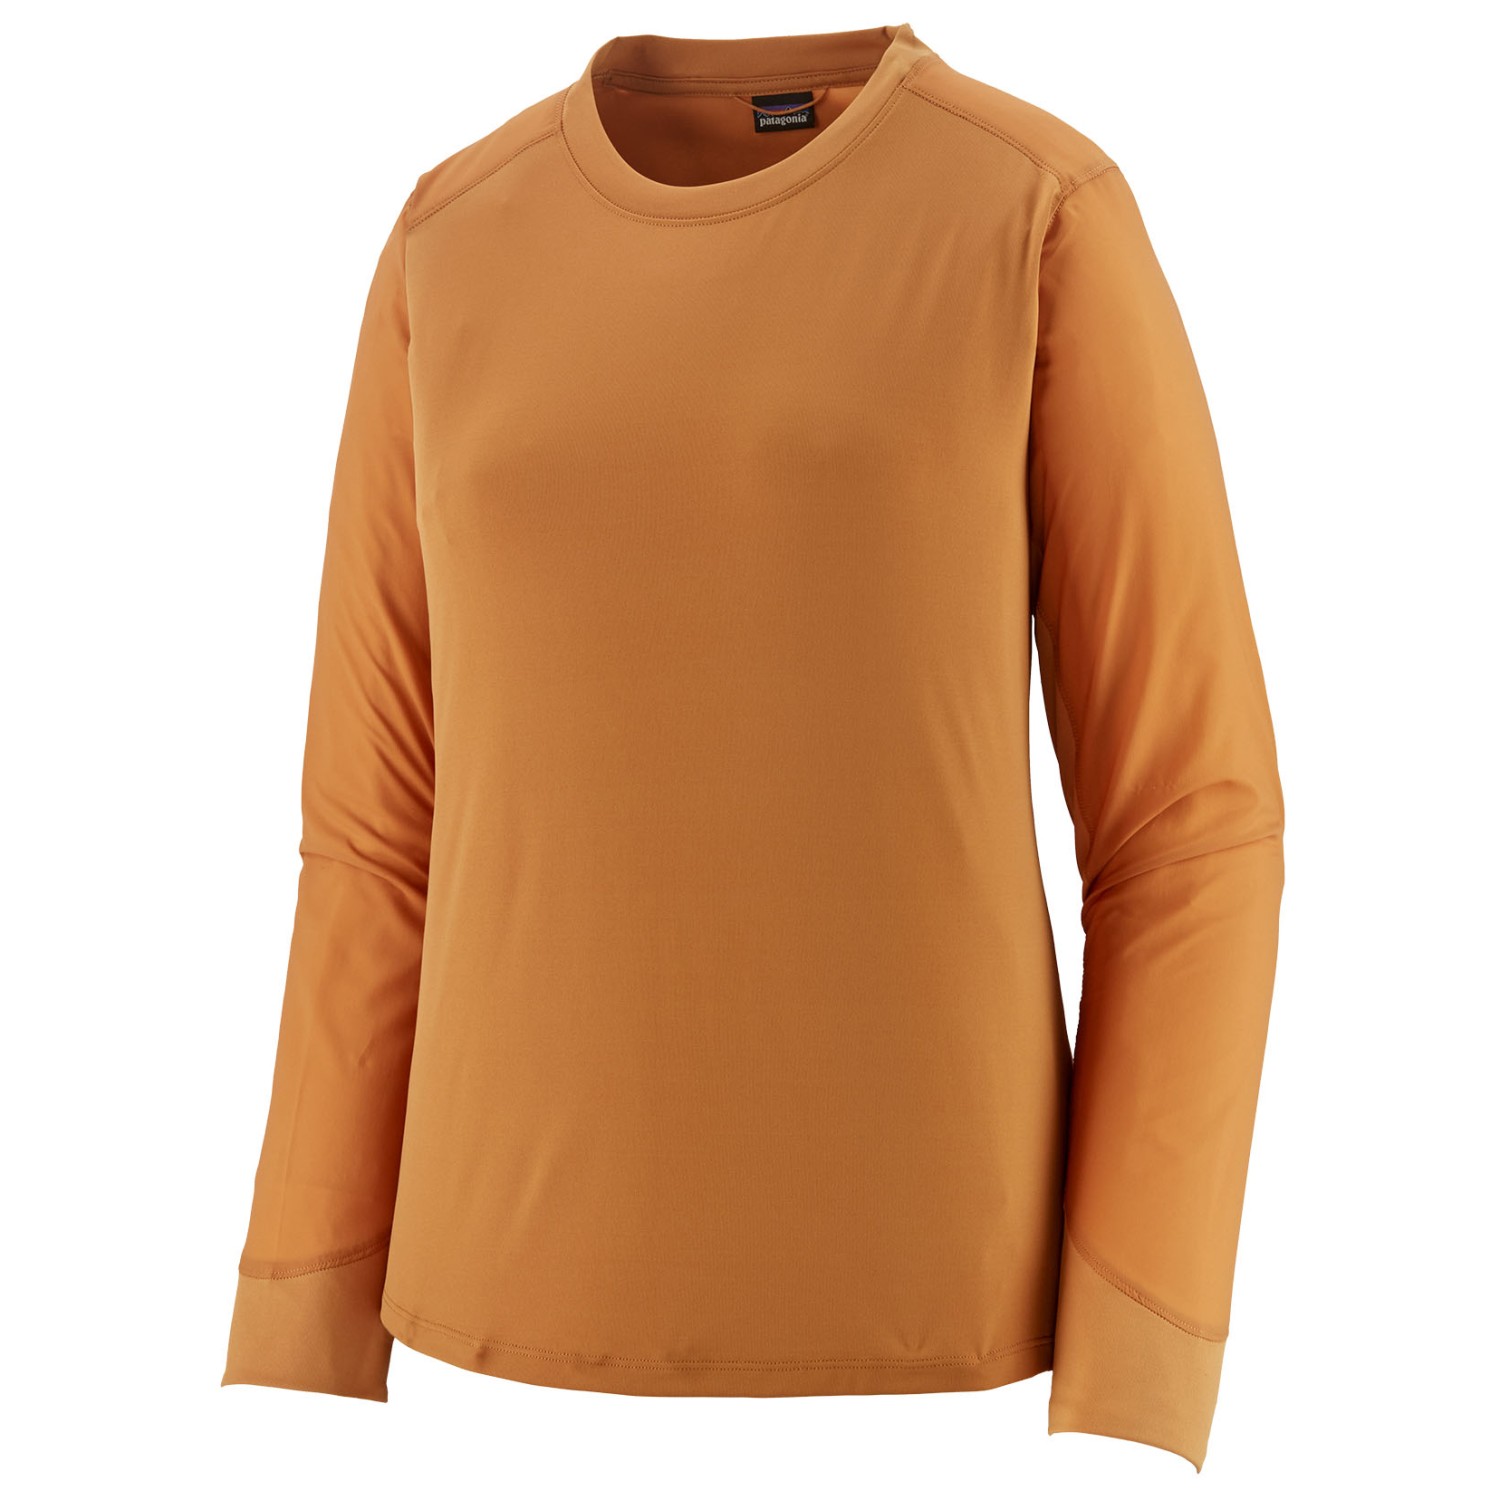 Функциональная рубашка Patagonia Women's L/S Dirt Craft Jersey, цвет Golden Caramel новинка модель горного велосипеда 1 10 из сплава литый под давлением металлический палец симулятор гонок коллекция для взрослых подарки